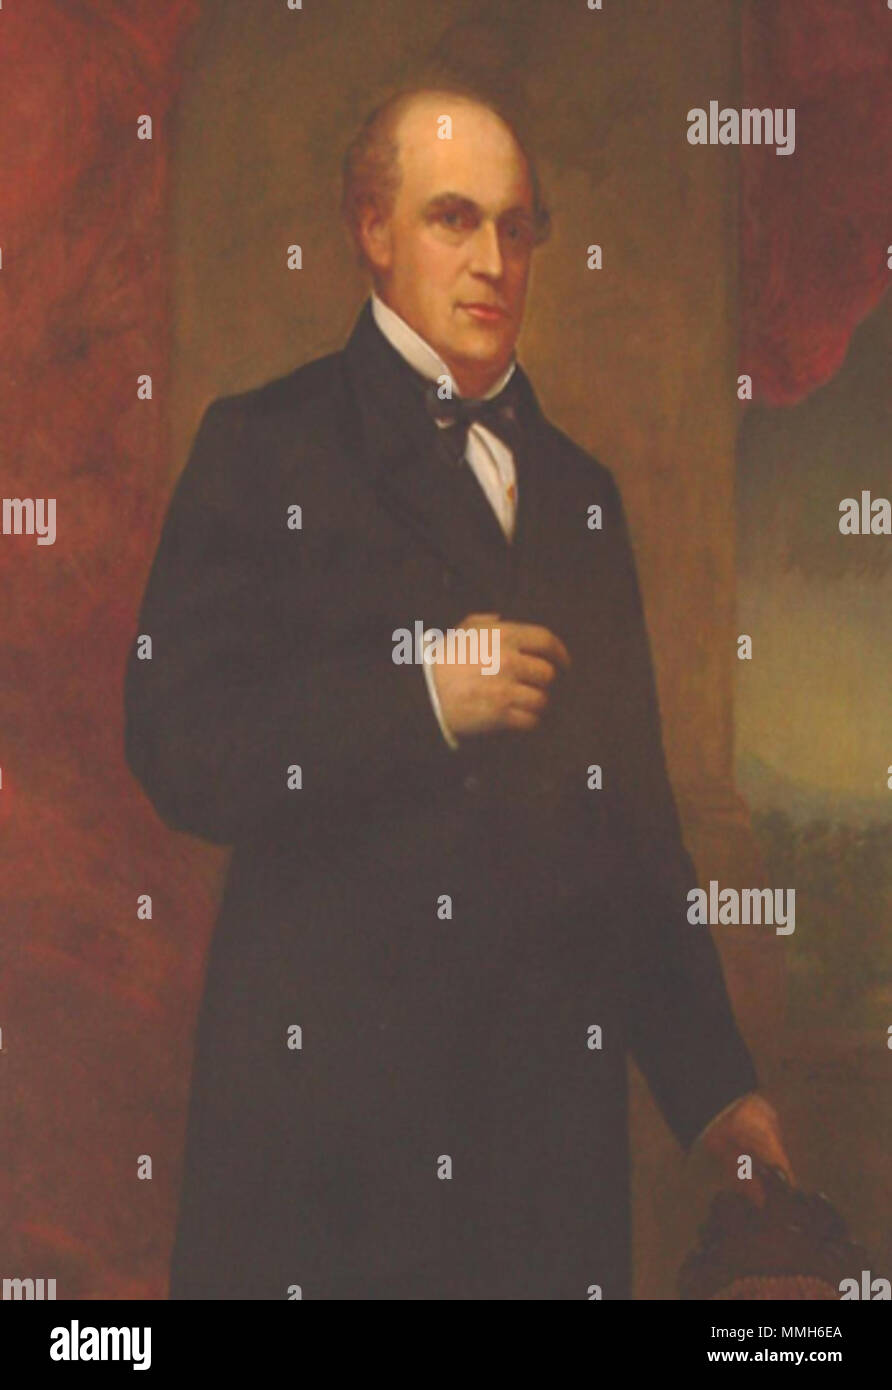 . Anglais : Portrait of Salmon P. Chase, Gouverneur de l'Ohio, se bloque dans la pièce 201 de l'Ohio Statehouse. Huile sur toile, 45 x 36 pouces. . 1870. Salmon P. Chase à statehouse Banque D'Images